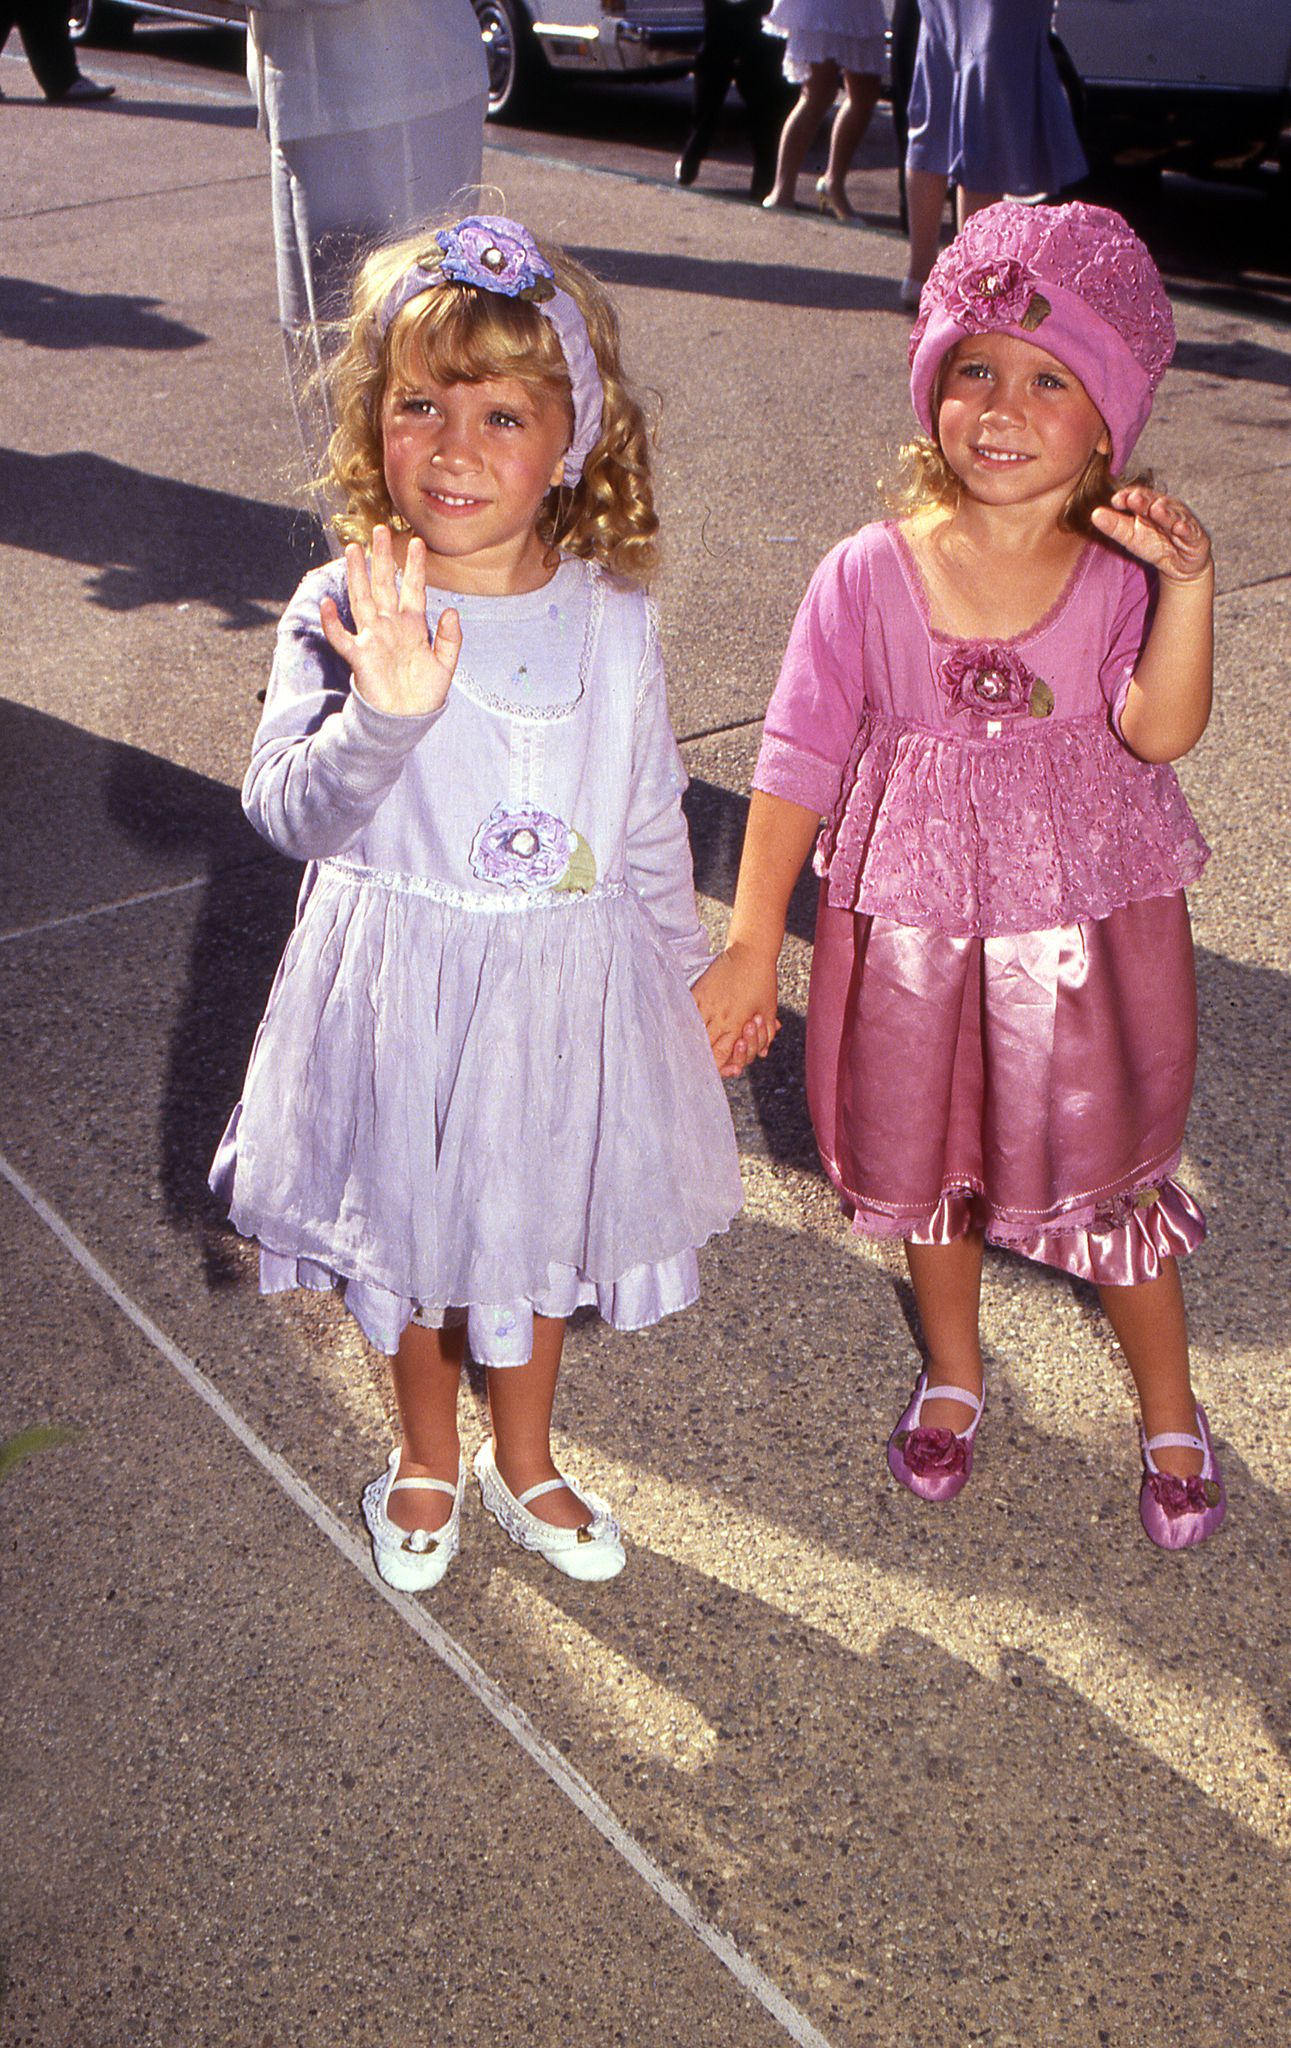 circa 1990 - Mary Kate et Ashley Olsen arrivant à un événement de célébrités | soure:Shutterstock